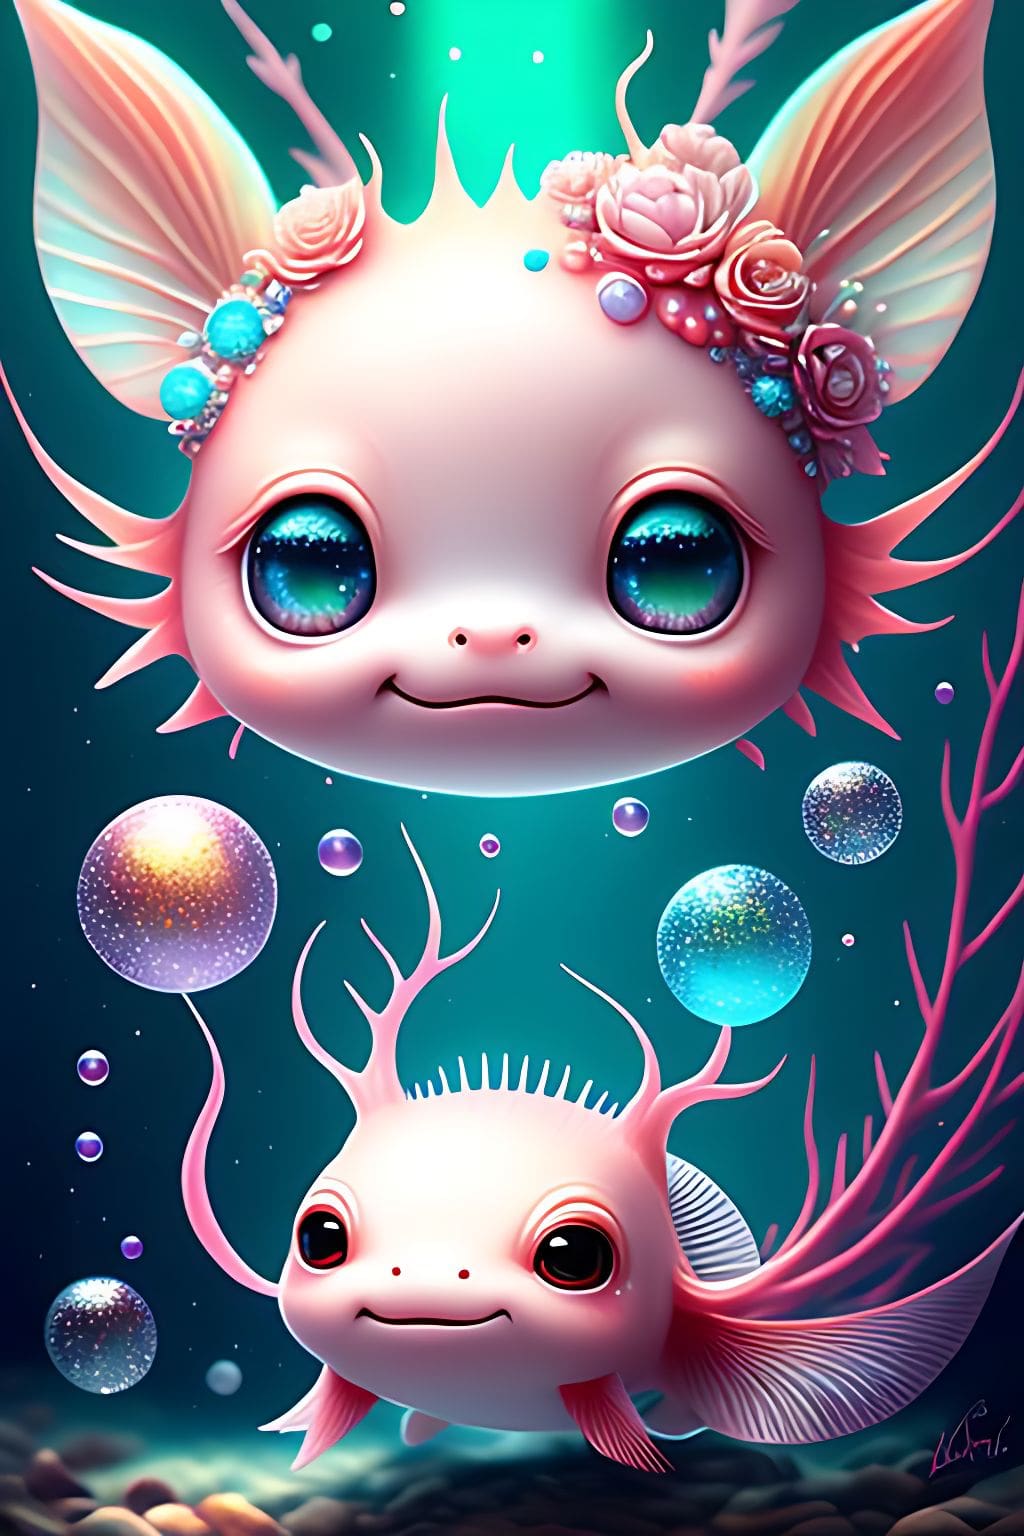 Cute Axolotl Wallpaper